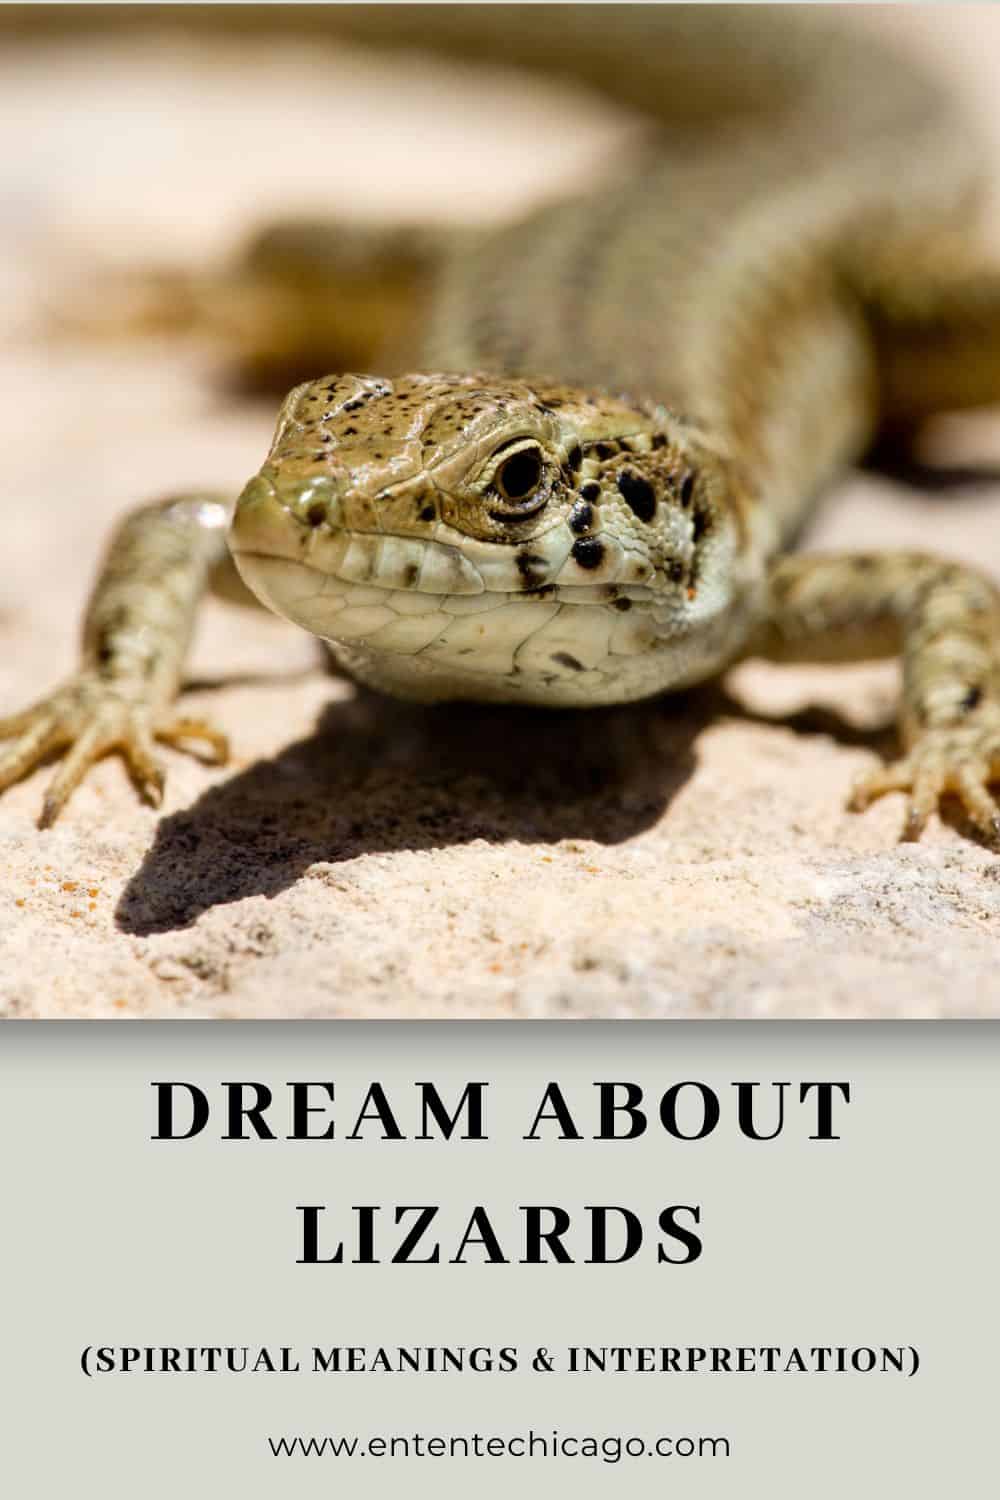 What Do Lizards Symbolize